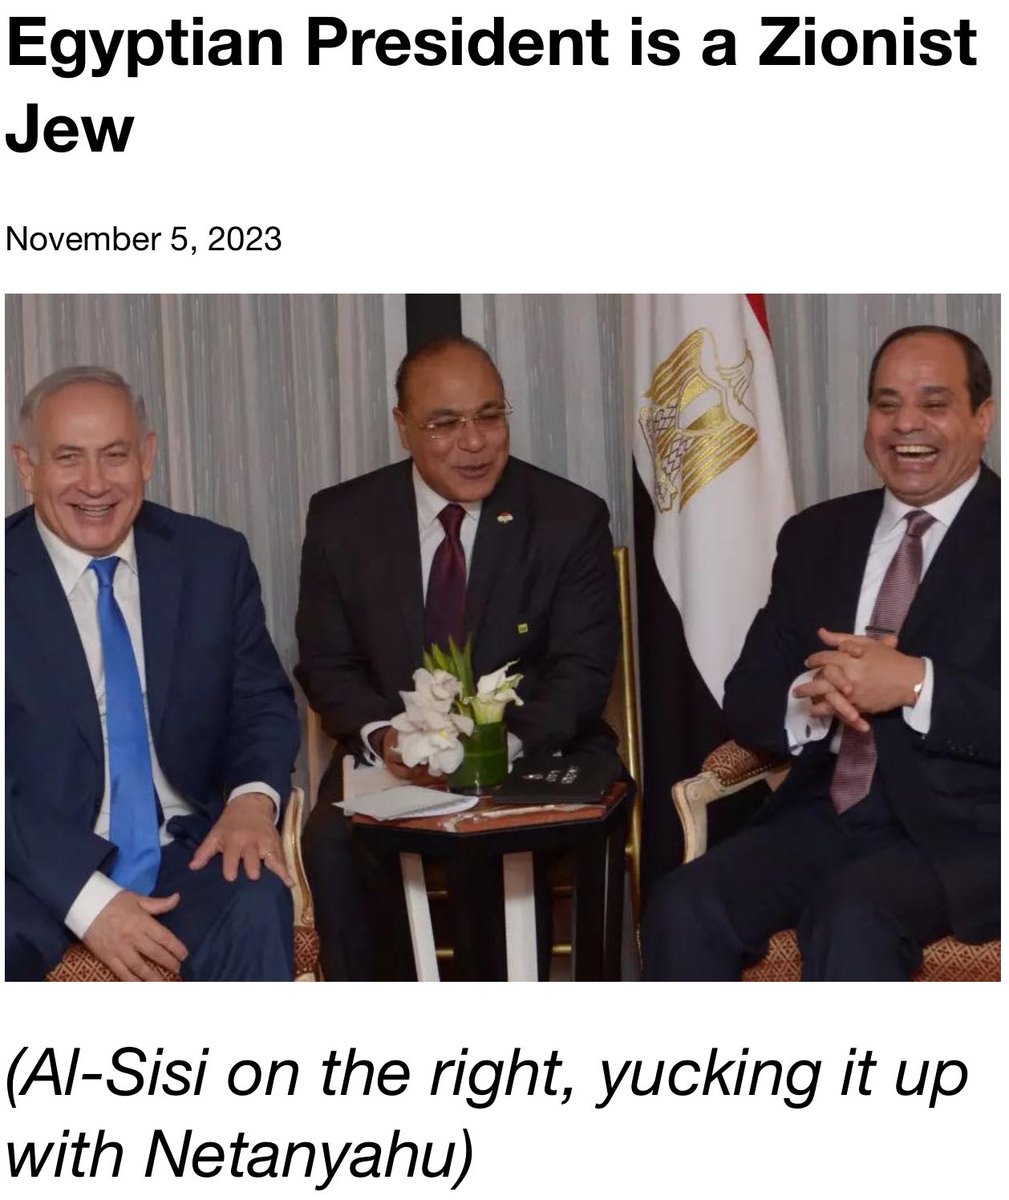 @edrTeddy Sisi works for Israel!